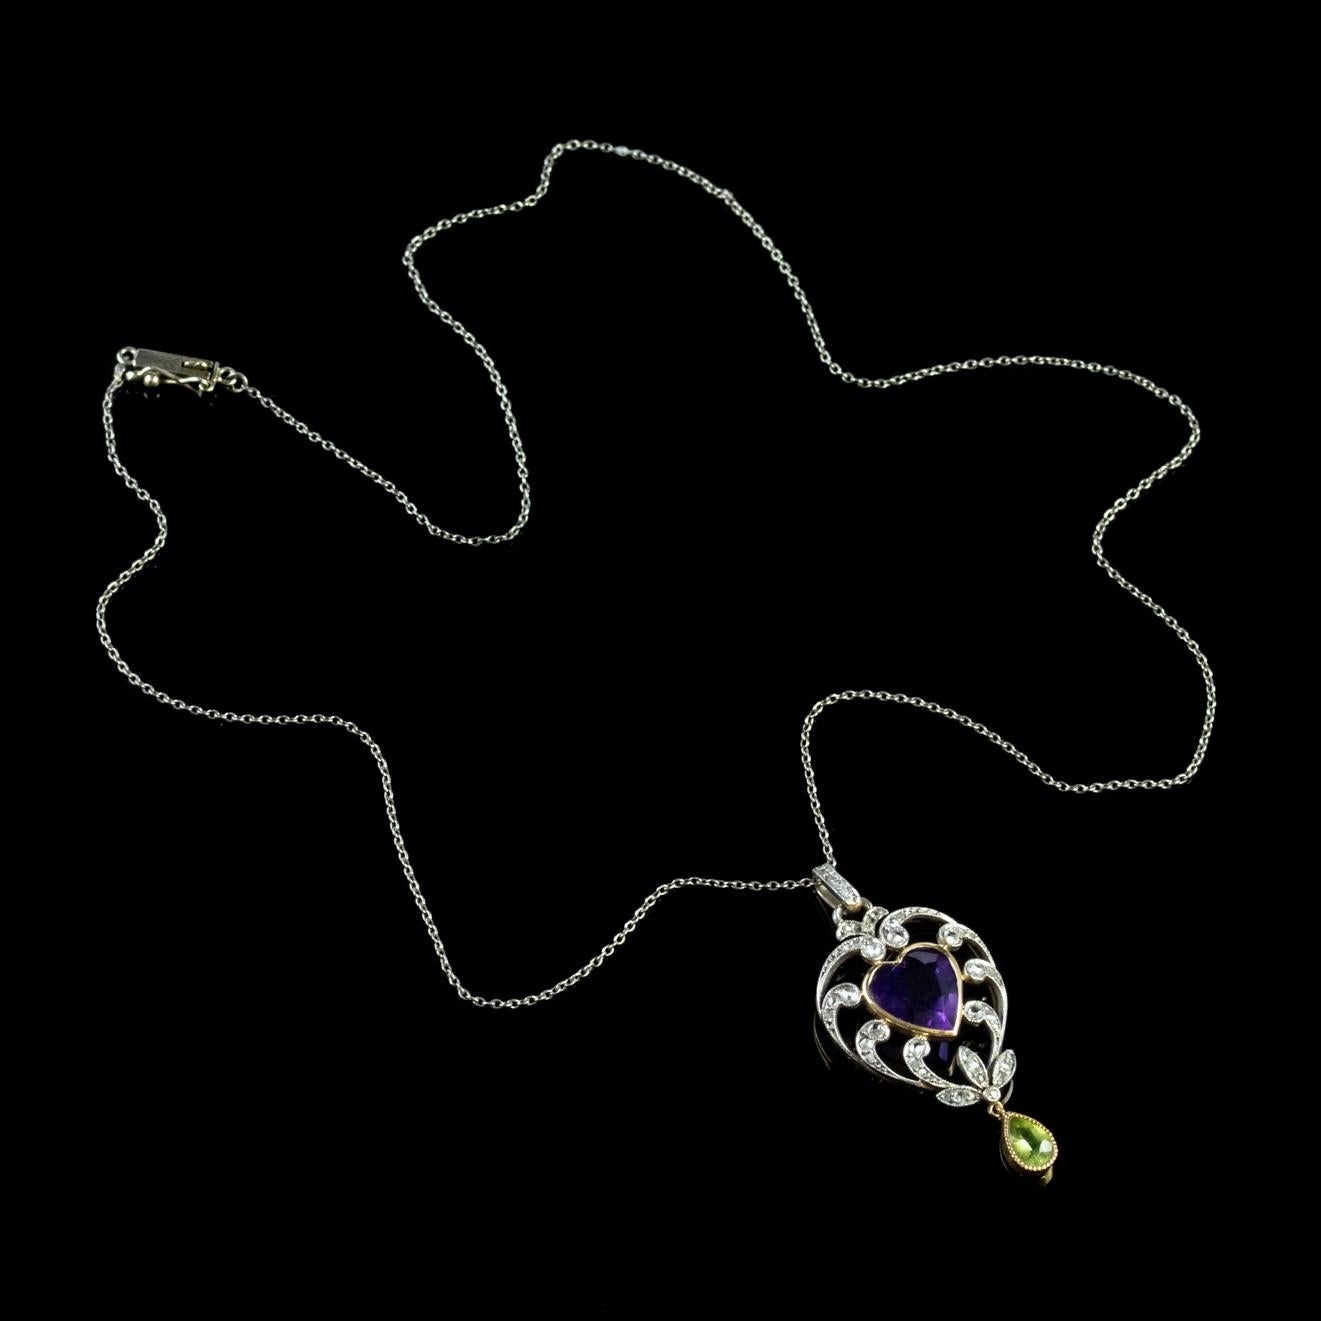 Antique Suffragette Heart Pendant Necklace Platinum 18 Carat Gold Edwardian 1